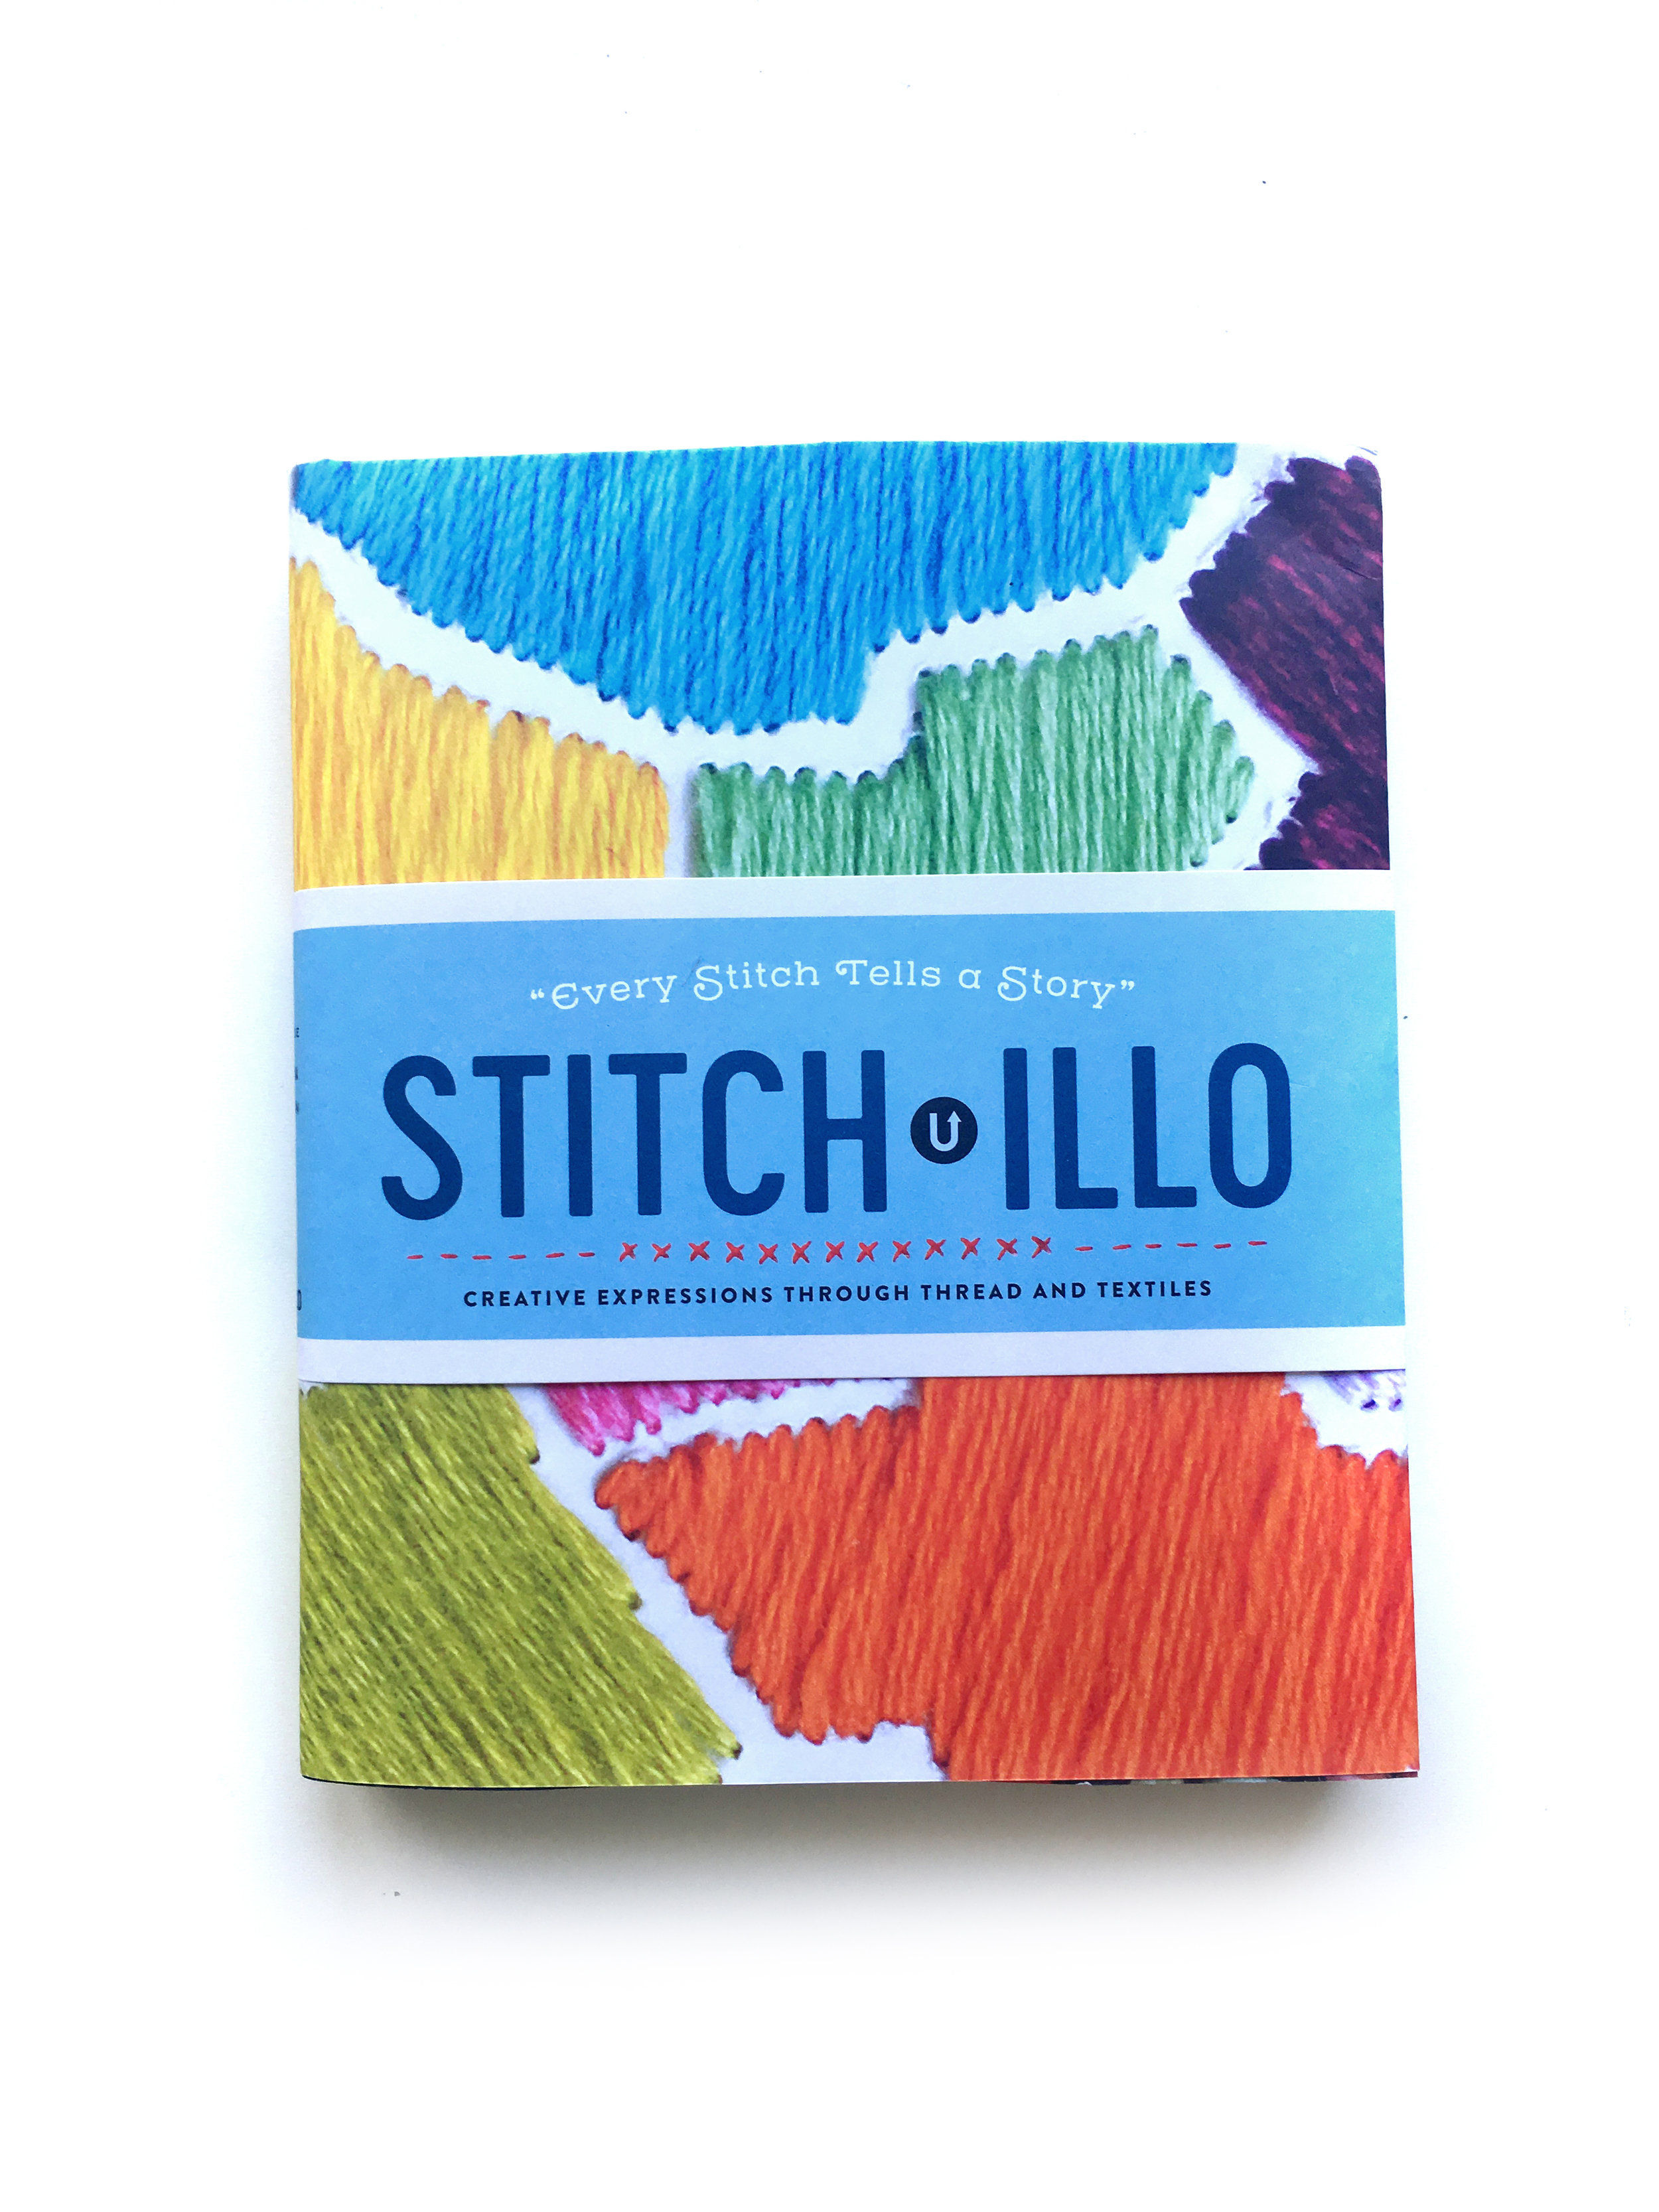 Stitch-illo by UPPERCASE-Dustjacketby-EvelinKasikov.JPG